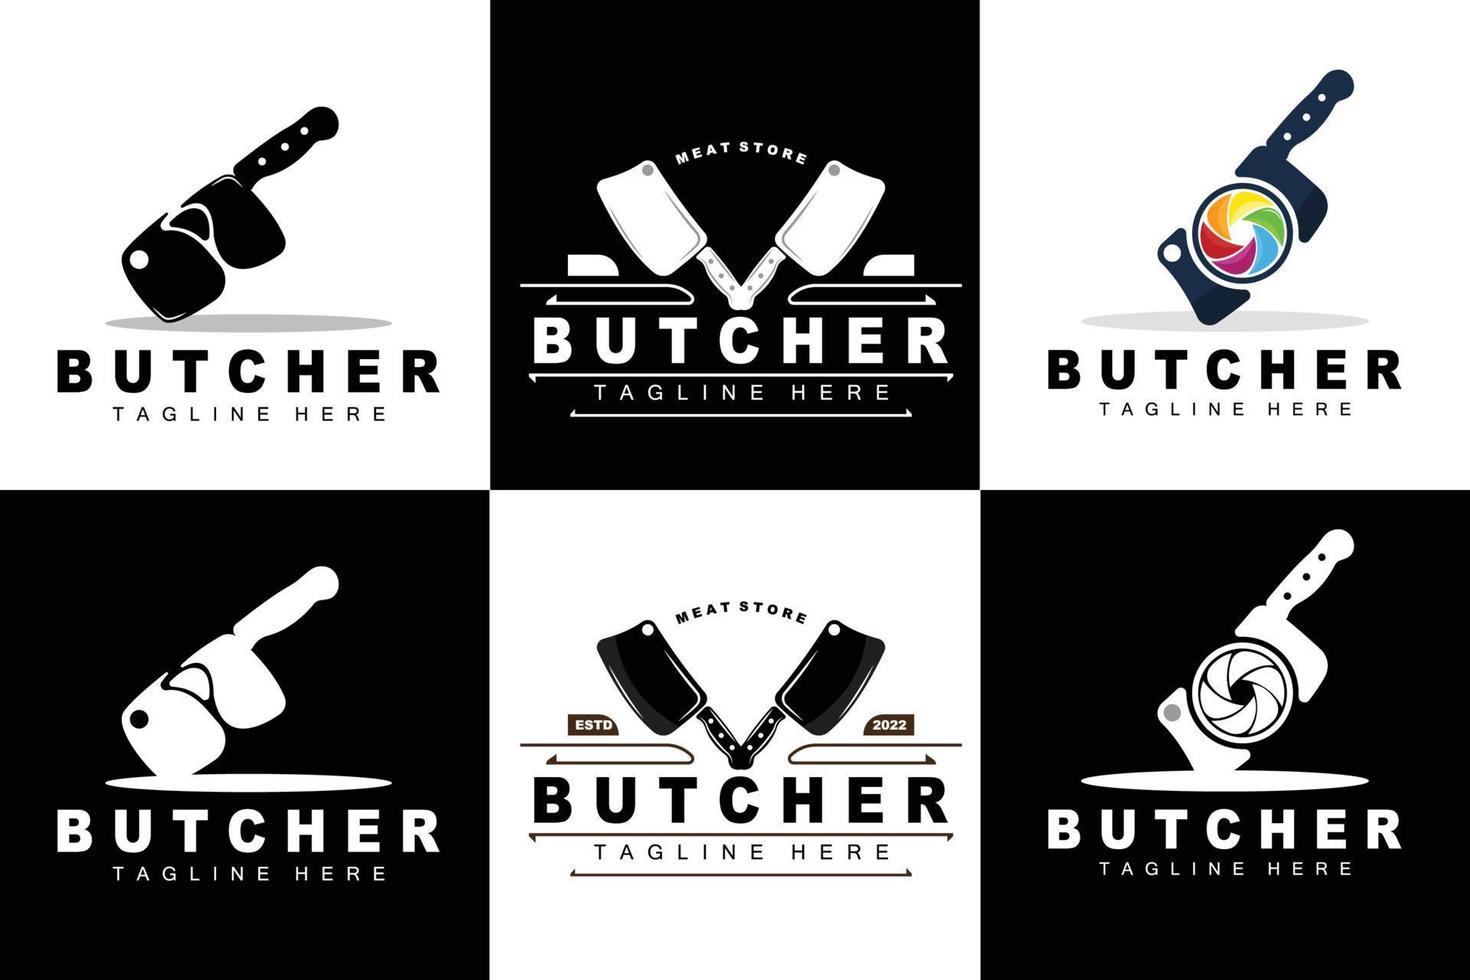 diseño de logotipo de carnicero, plantilla de vector de herramienta de corte de cuchillo, diseño de ilustración de marca de producto para carnicero, granja, carnicería